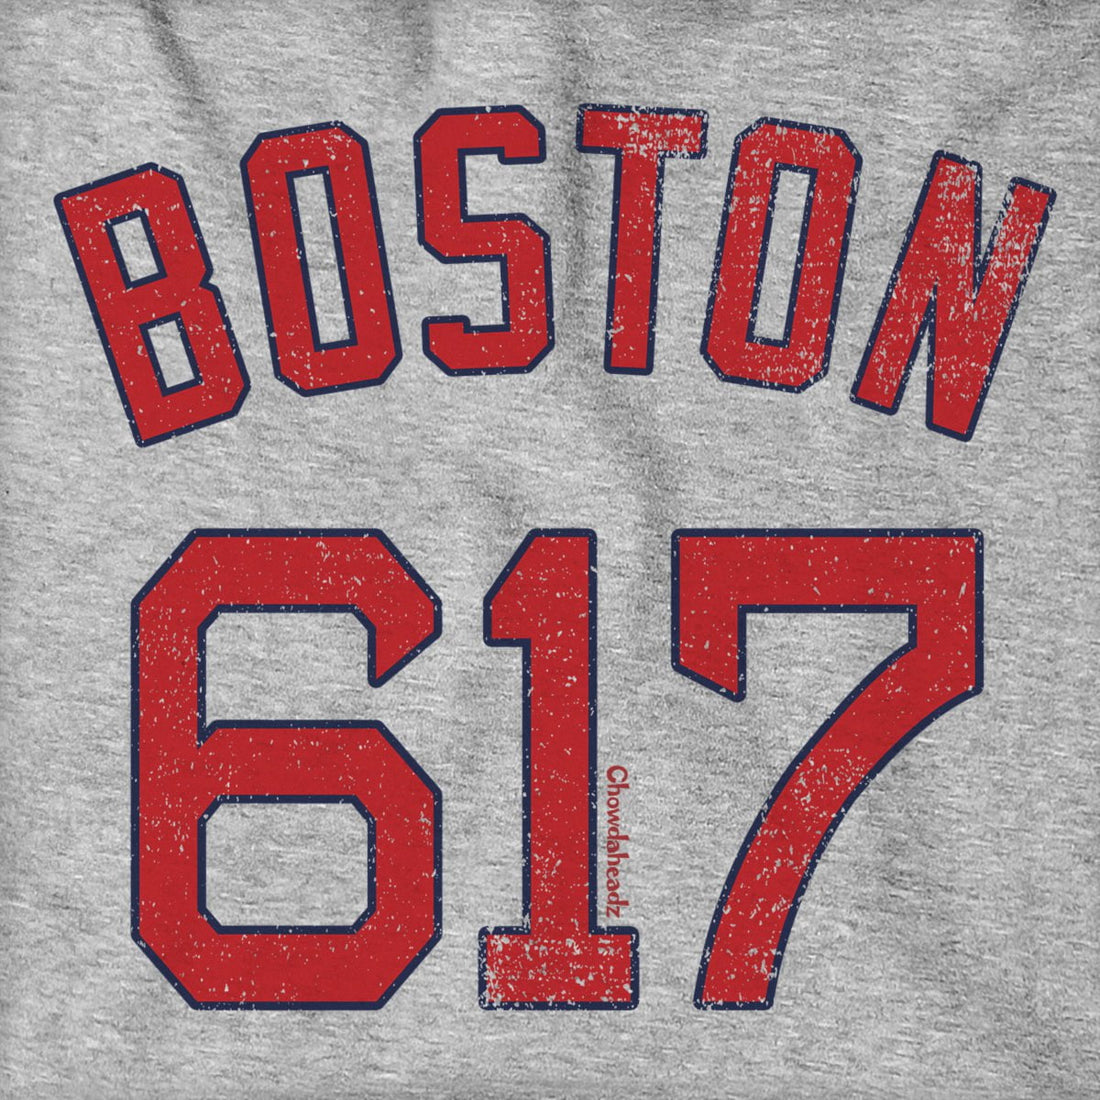 Boston 617 Baseball Hoodie - Chowdaheadz